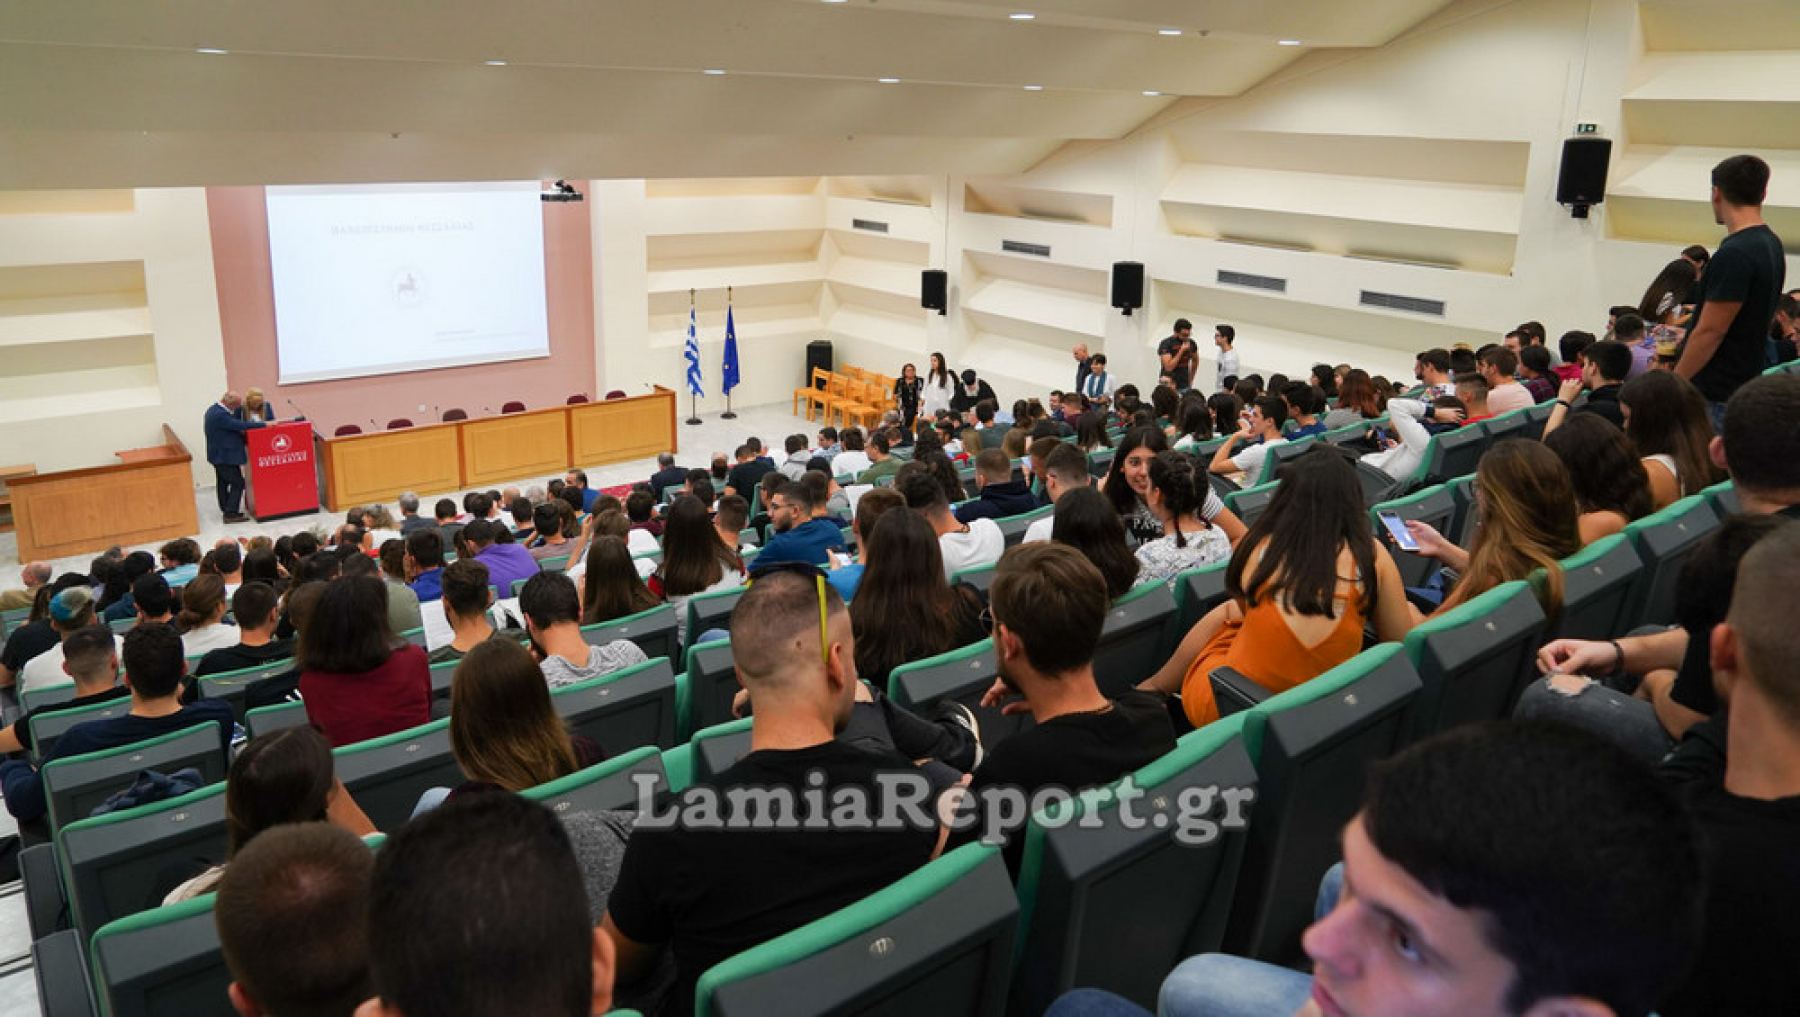 Το Πανεπιστήμιο Θεσσαλίας καλωσόρισε τους πρωτοετείς φοιτητές στη Λαμία - ΒΙΝΤΕΟ